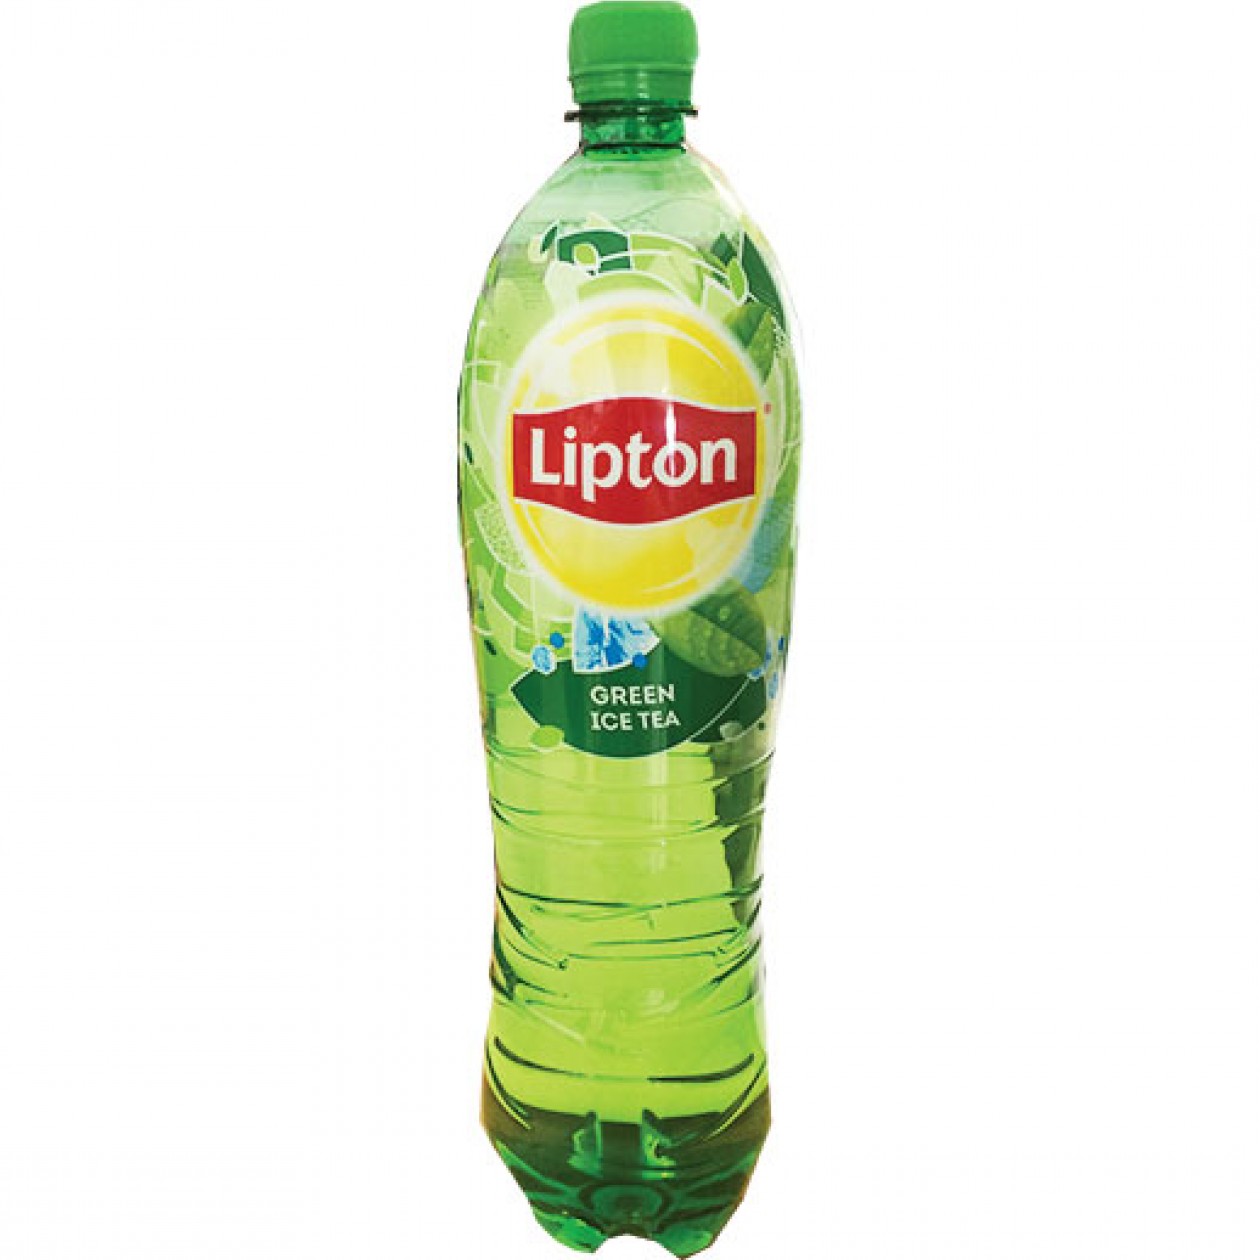 Lipton Ice Tea Green 1.5L Bottle